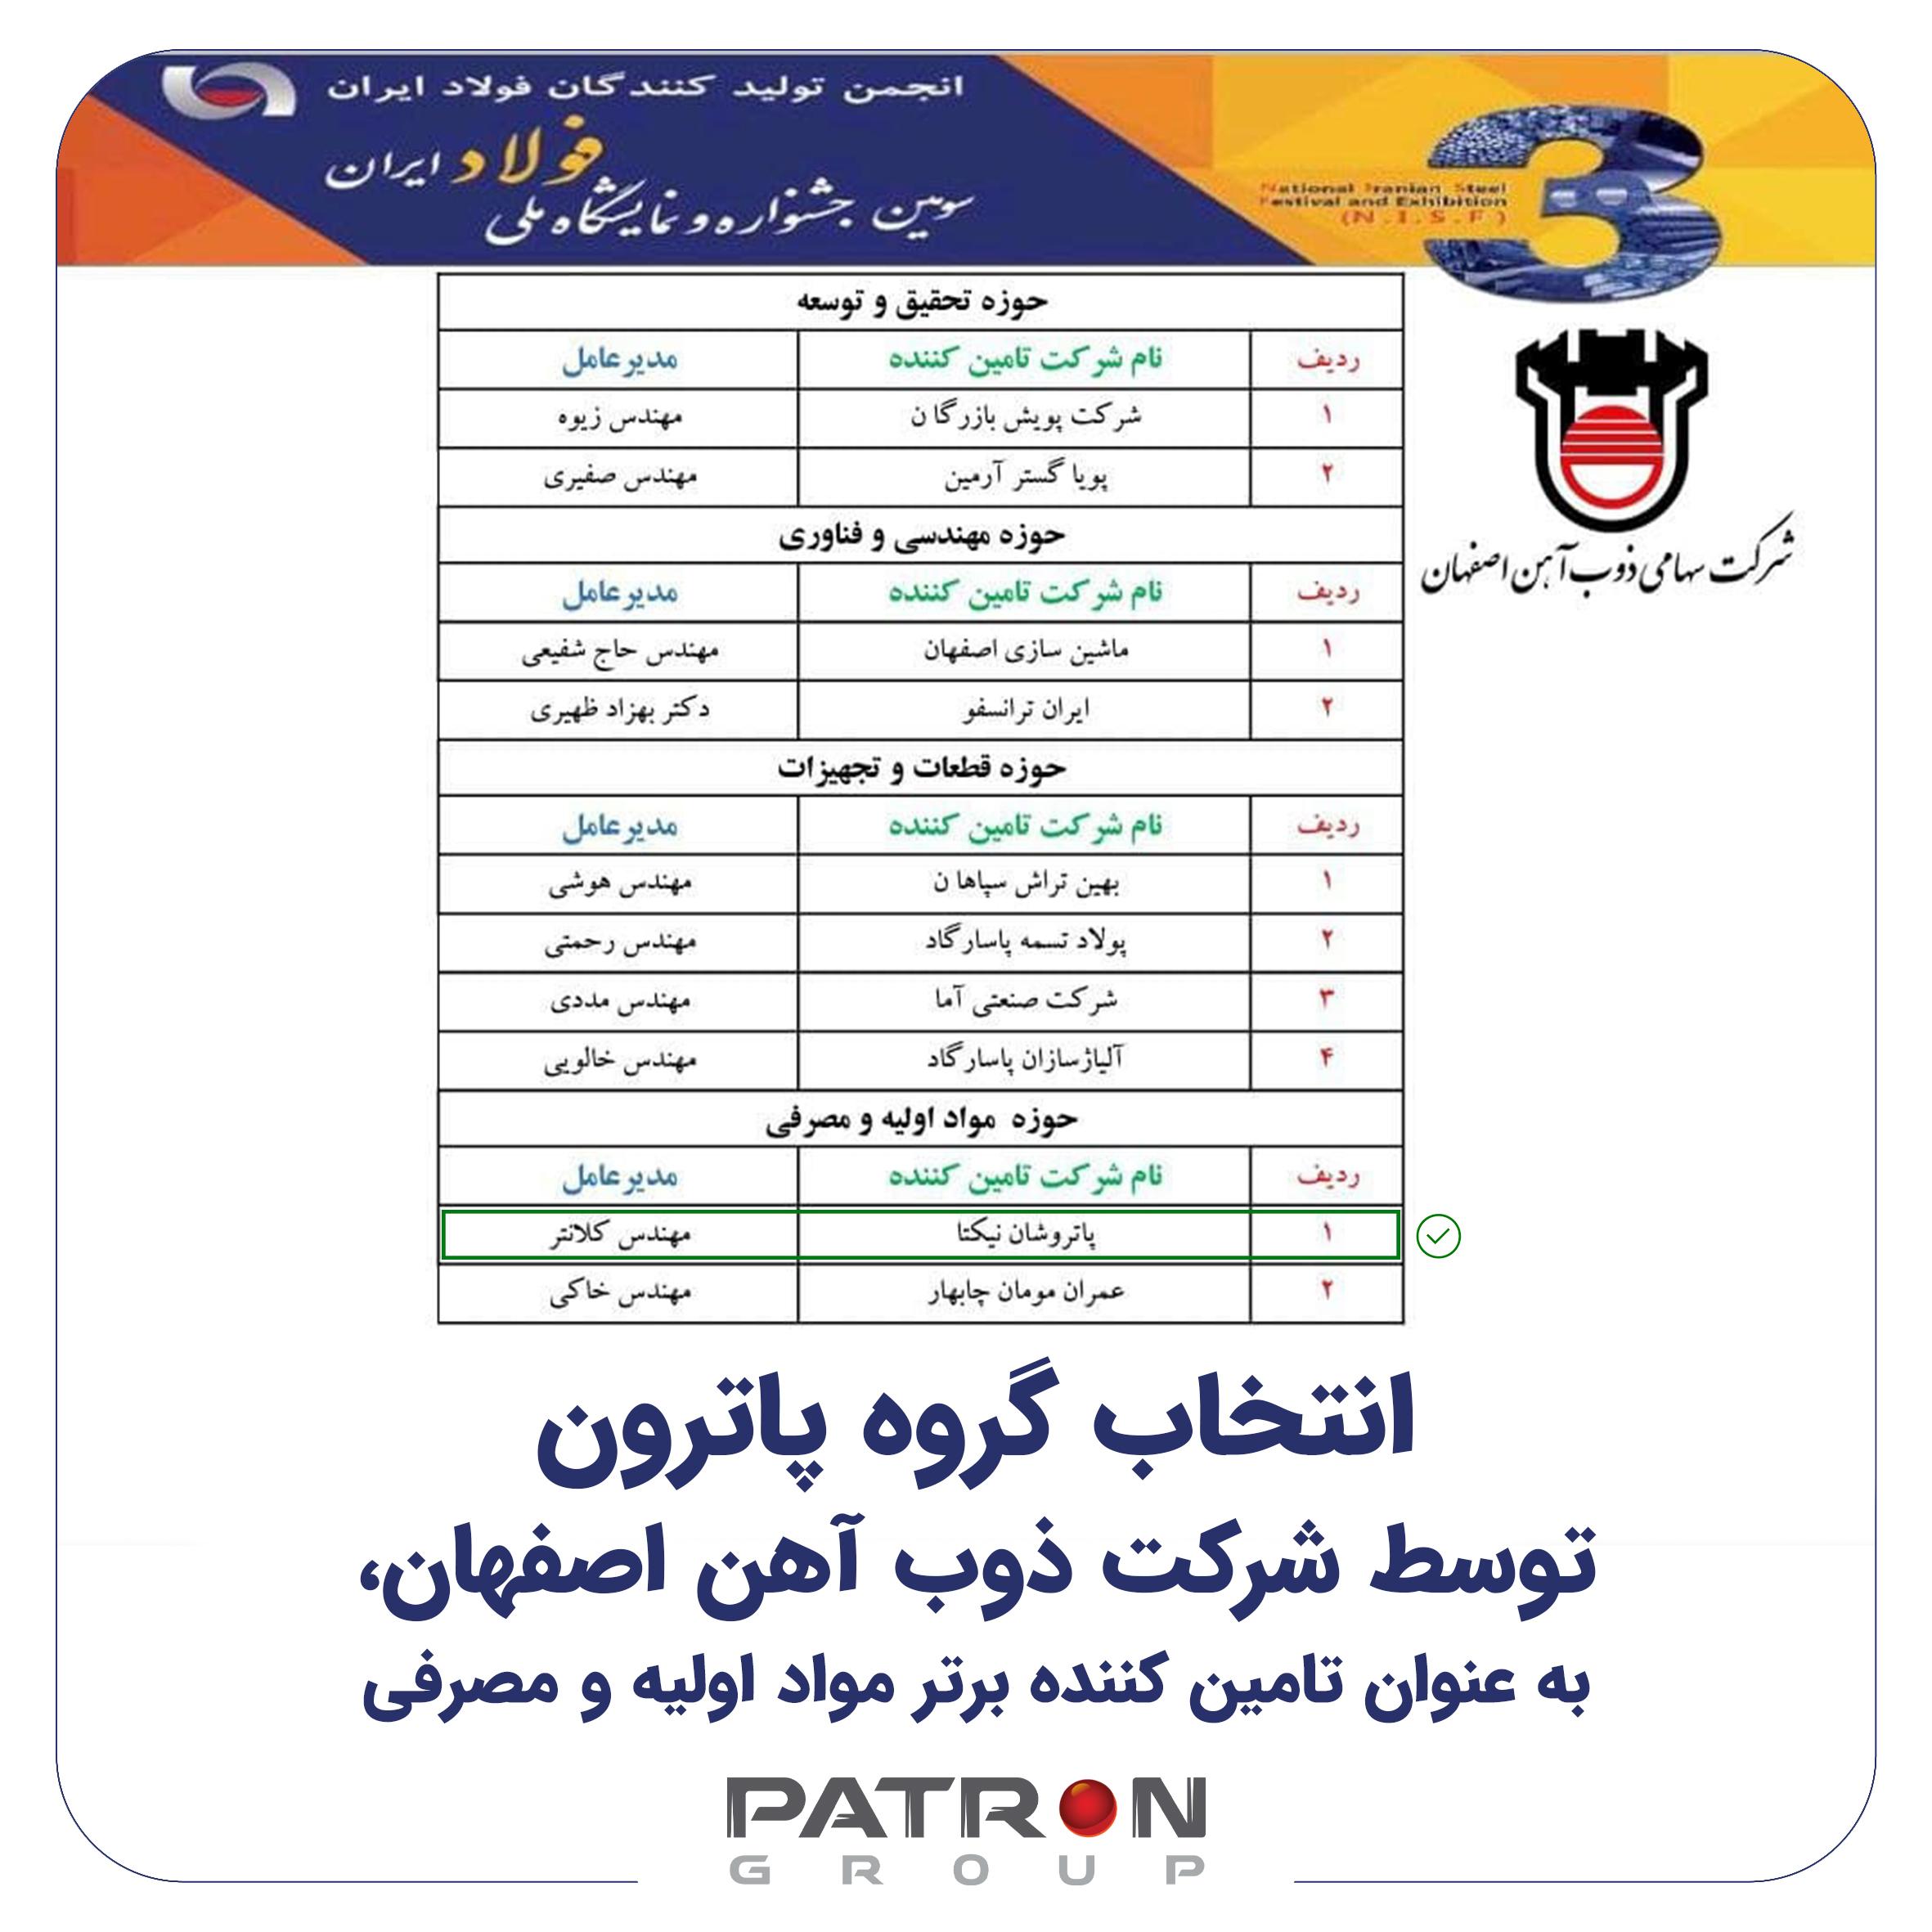 انتخاب گروه پاترون توسط شرکت ذوب آهن اصفهان